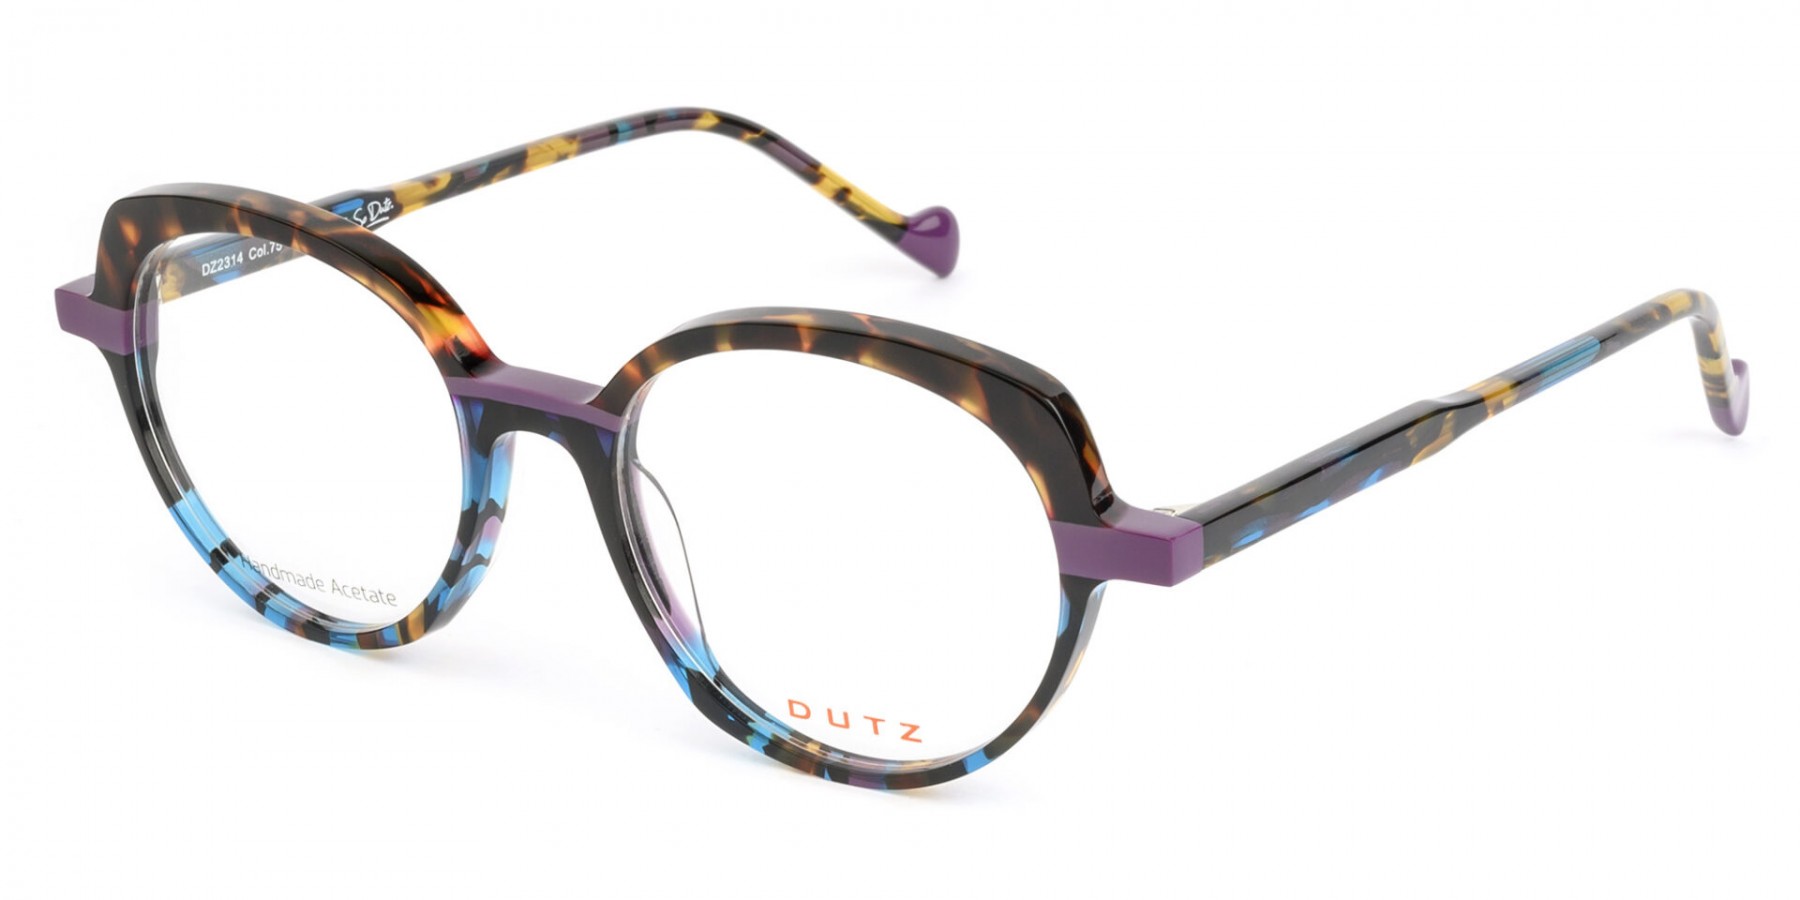 Dutz 2314 C75 - Oculos de Grau